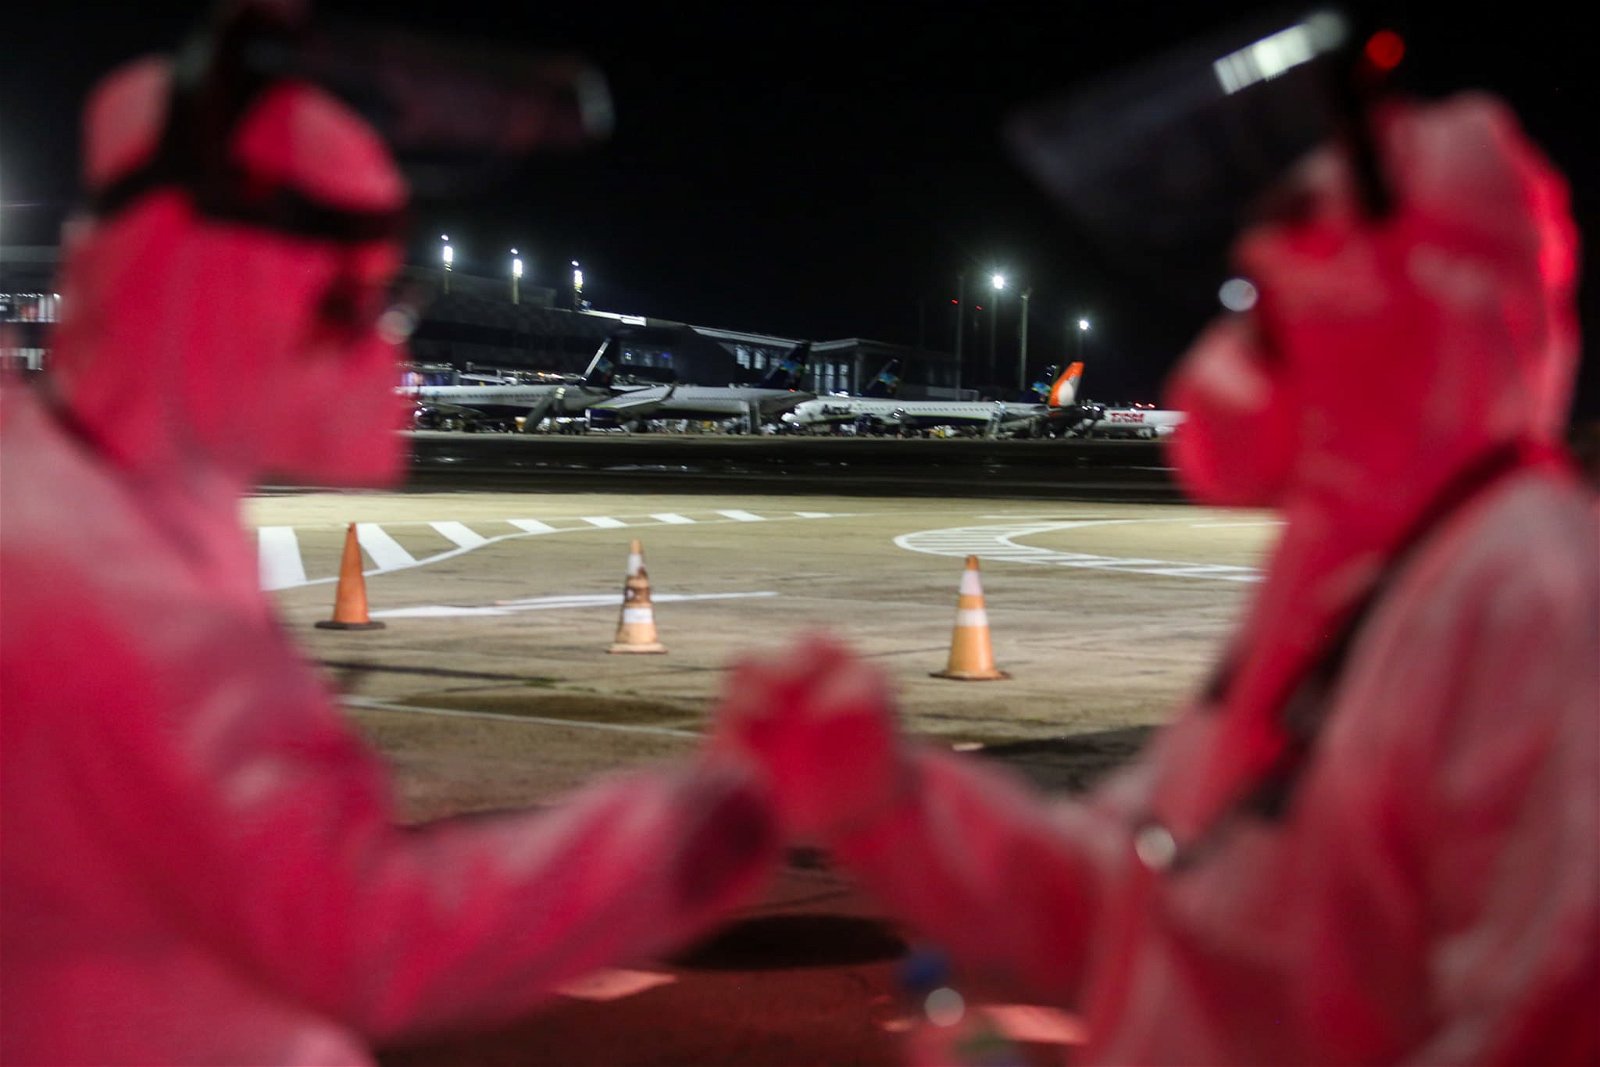 Duas pessoas, vestindo roupa especial anti-infecção se cumprimentam. Ao fundo, aviões estacionados no aeroporto e cones de sinalização na pista do aeroporto.